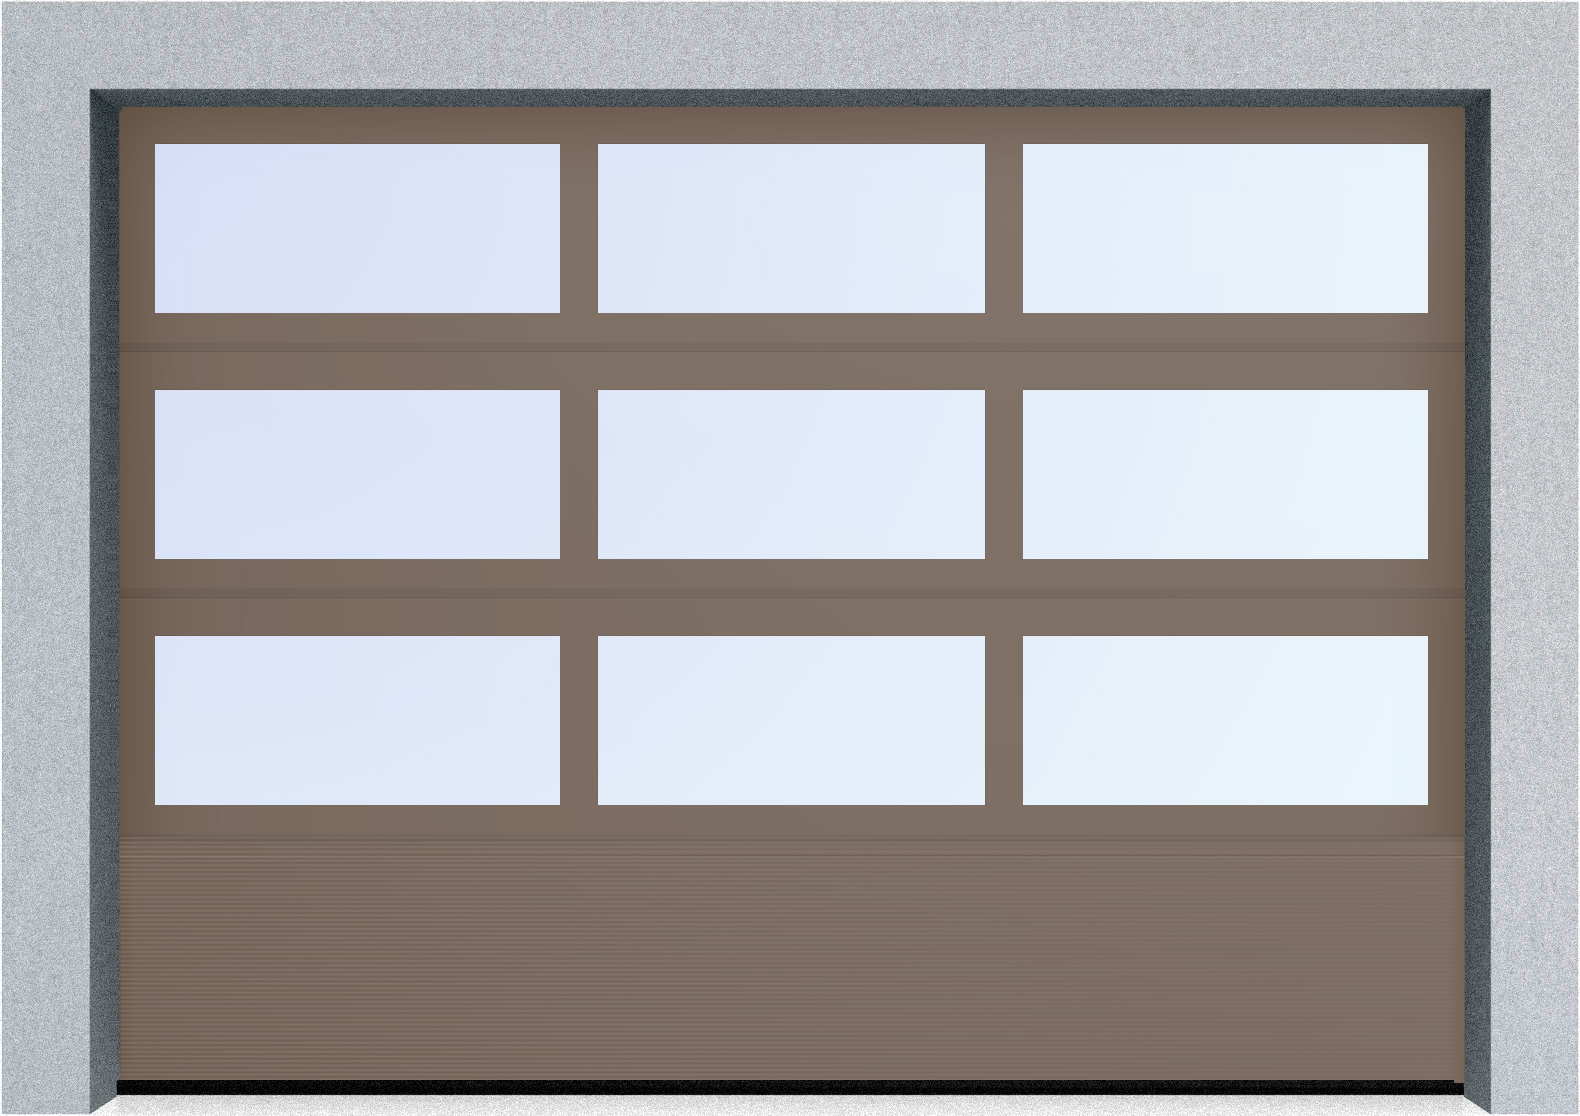  Автоматические секционные панорамные ворота серии AluTrend с комбинированным типом полотна (АЛПС) 6500х4500 S-гофр, Микроволна стандартные цвета, фото 11 